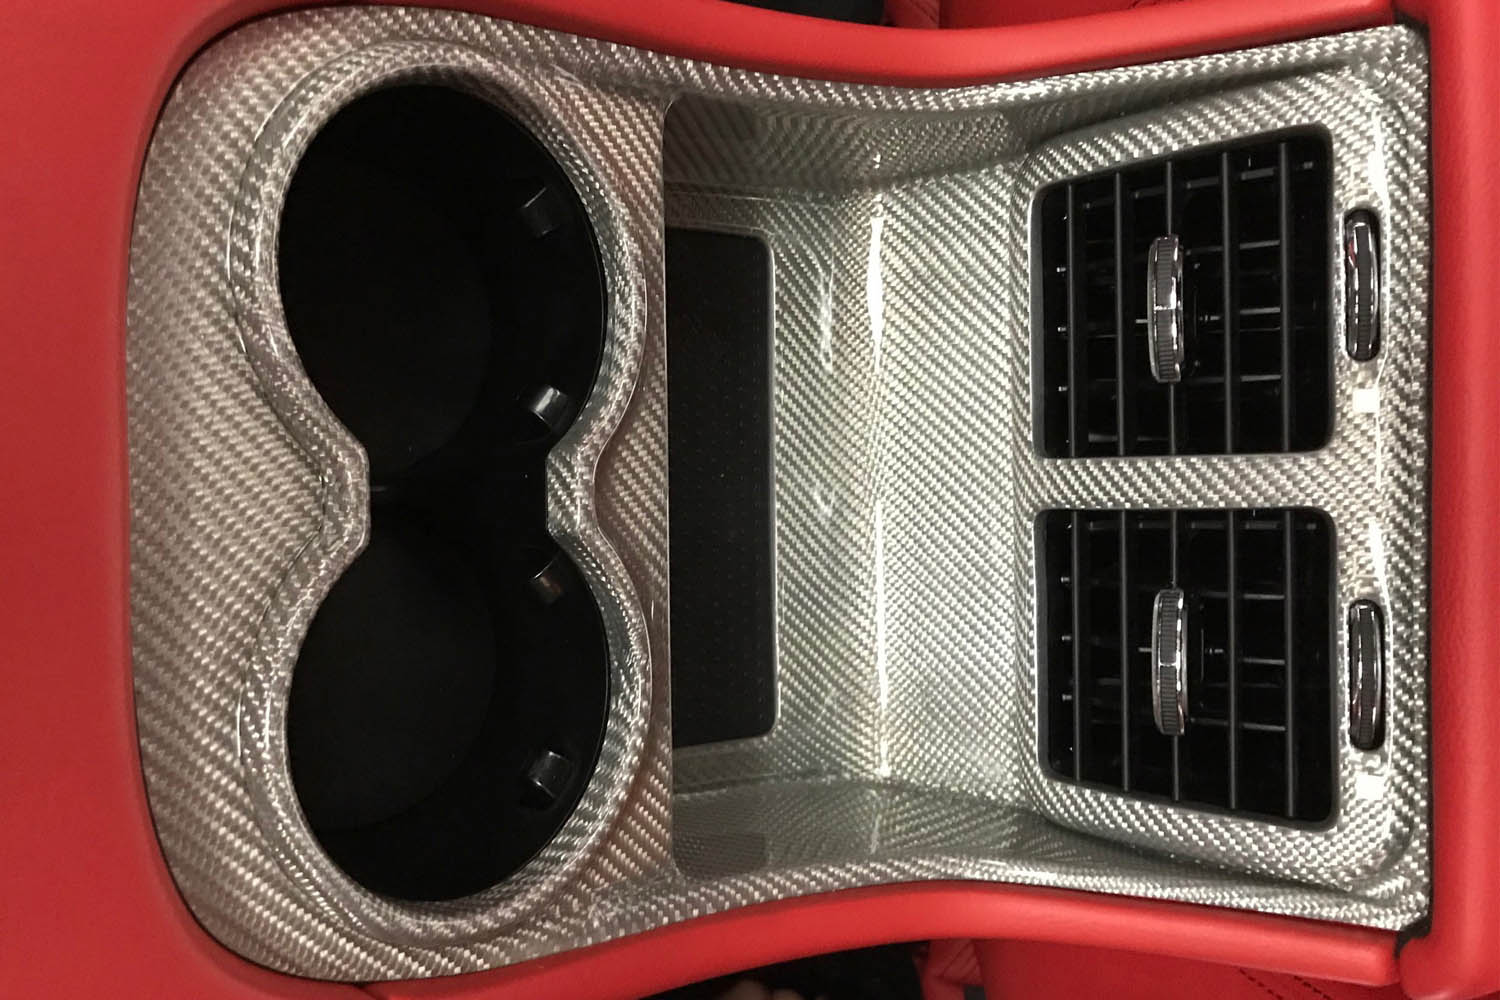  Maserati GranCabrio Carbon Luftdüse Armaturenbrett Verkleidung Zierleiste Interieur Leisten Carbonteile   